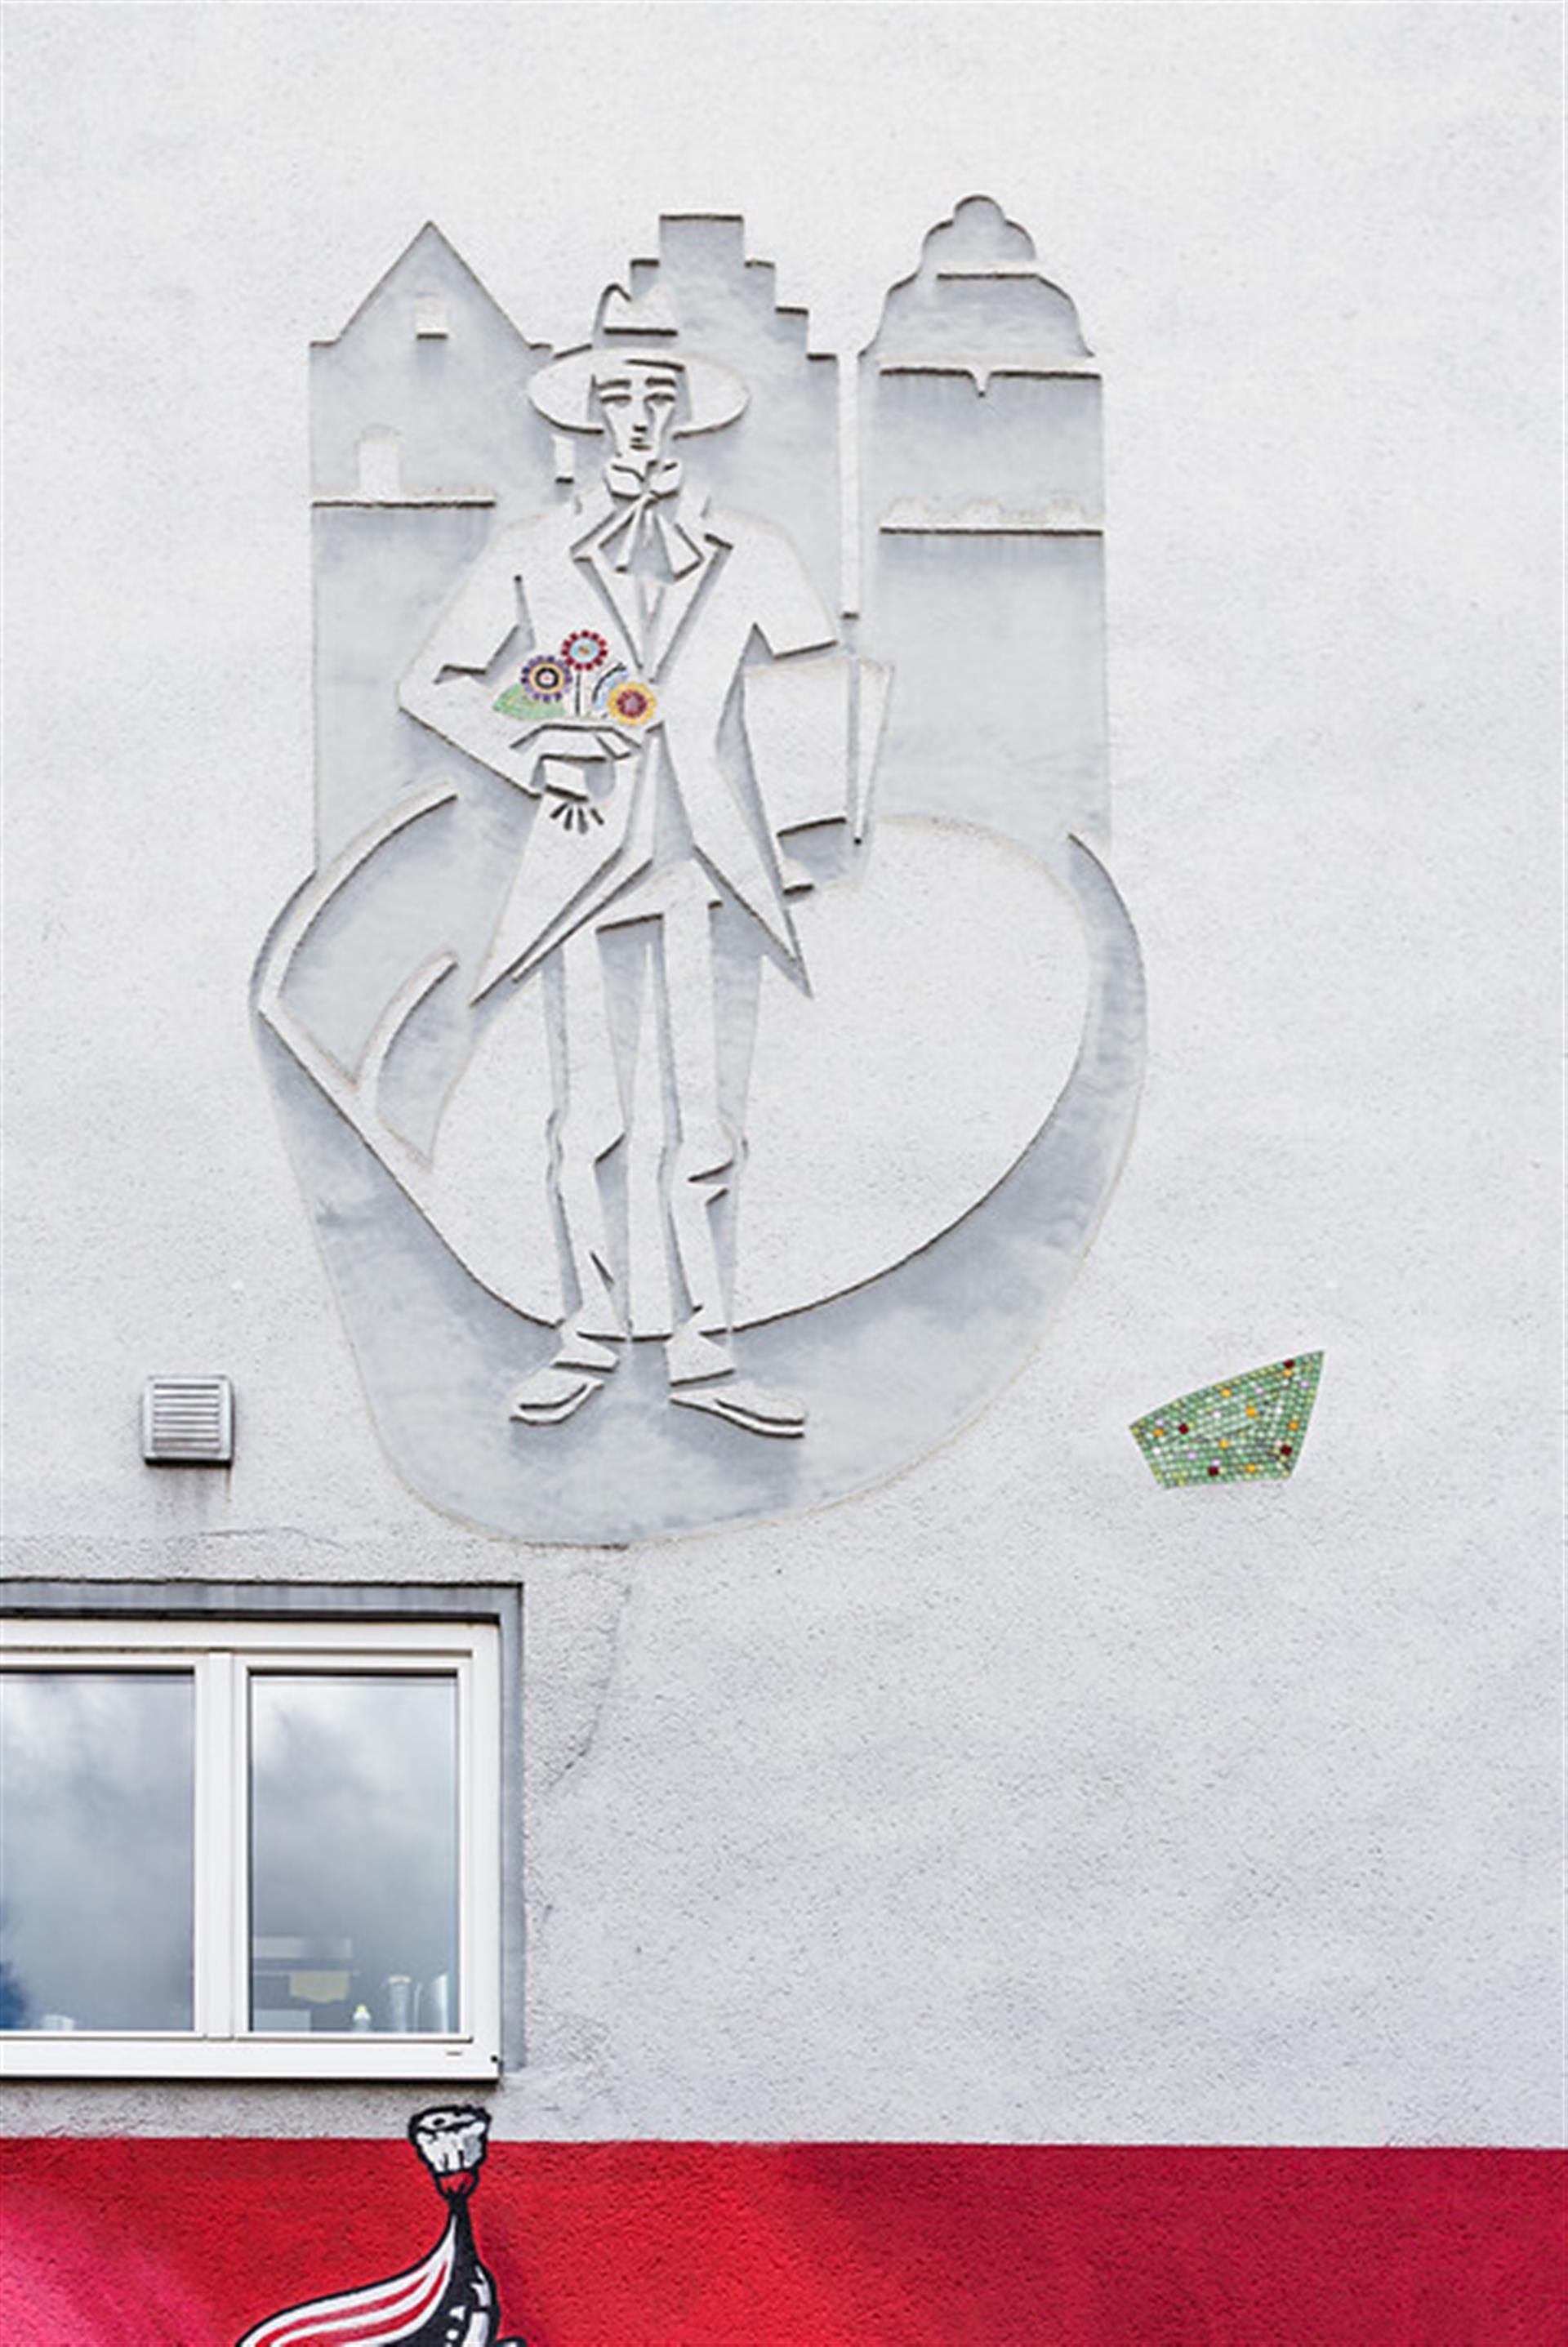 Sgraffito des Künstlers "Maler Bock" in der Kölner Innenstadt (2020) &copy; Sebastian Löder / CC BY 4.0